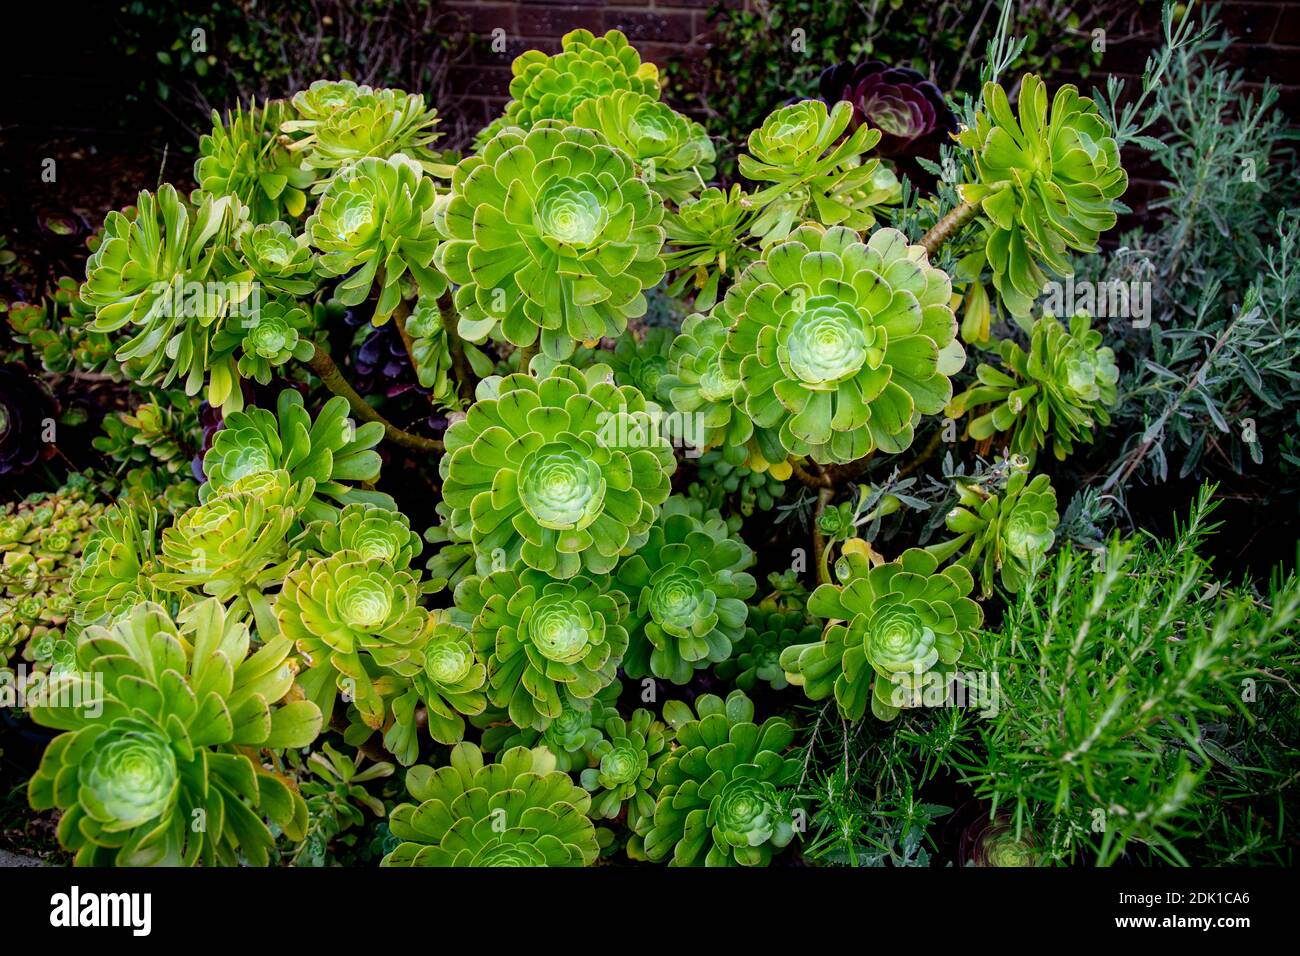 Aeonium Undulatum, Ornamental Succulents. Stock Photo